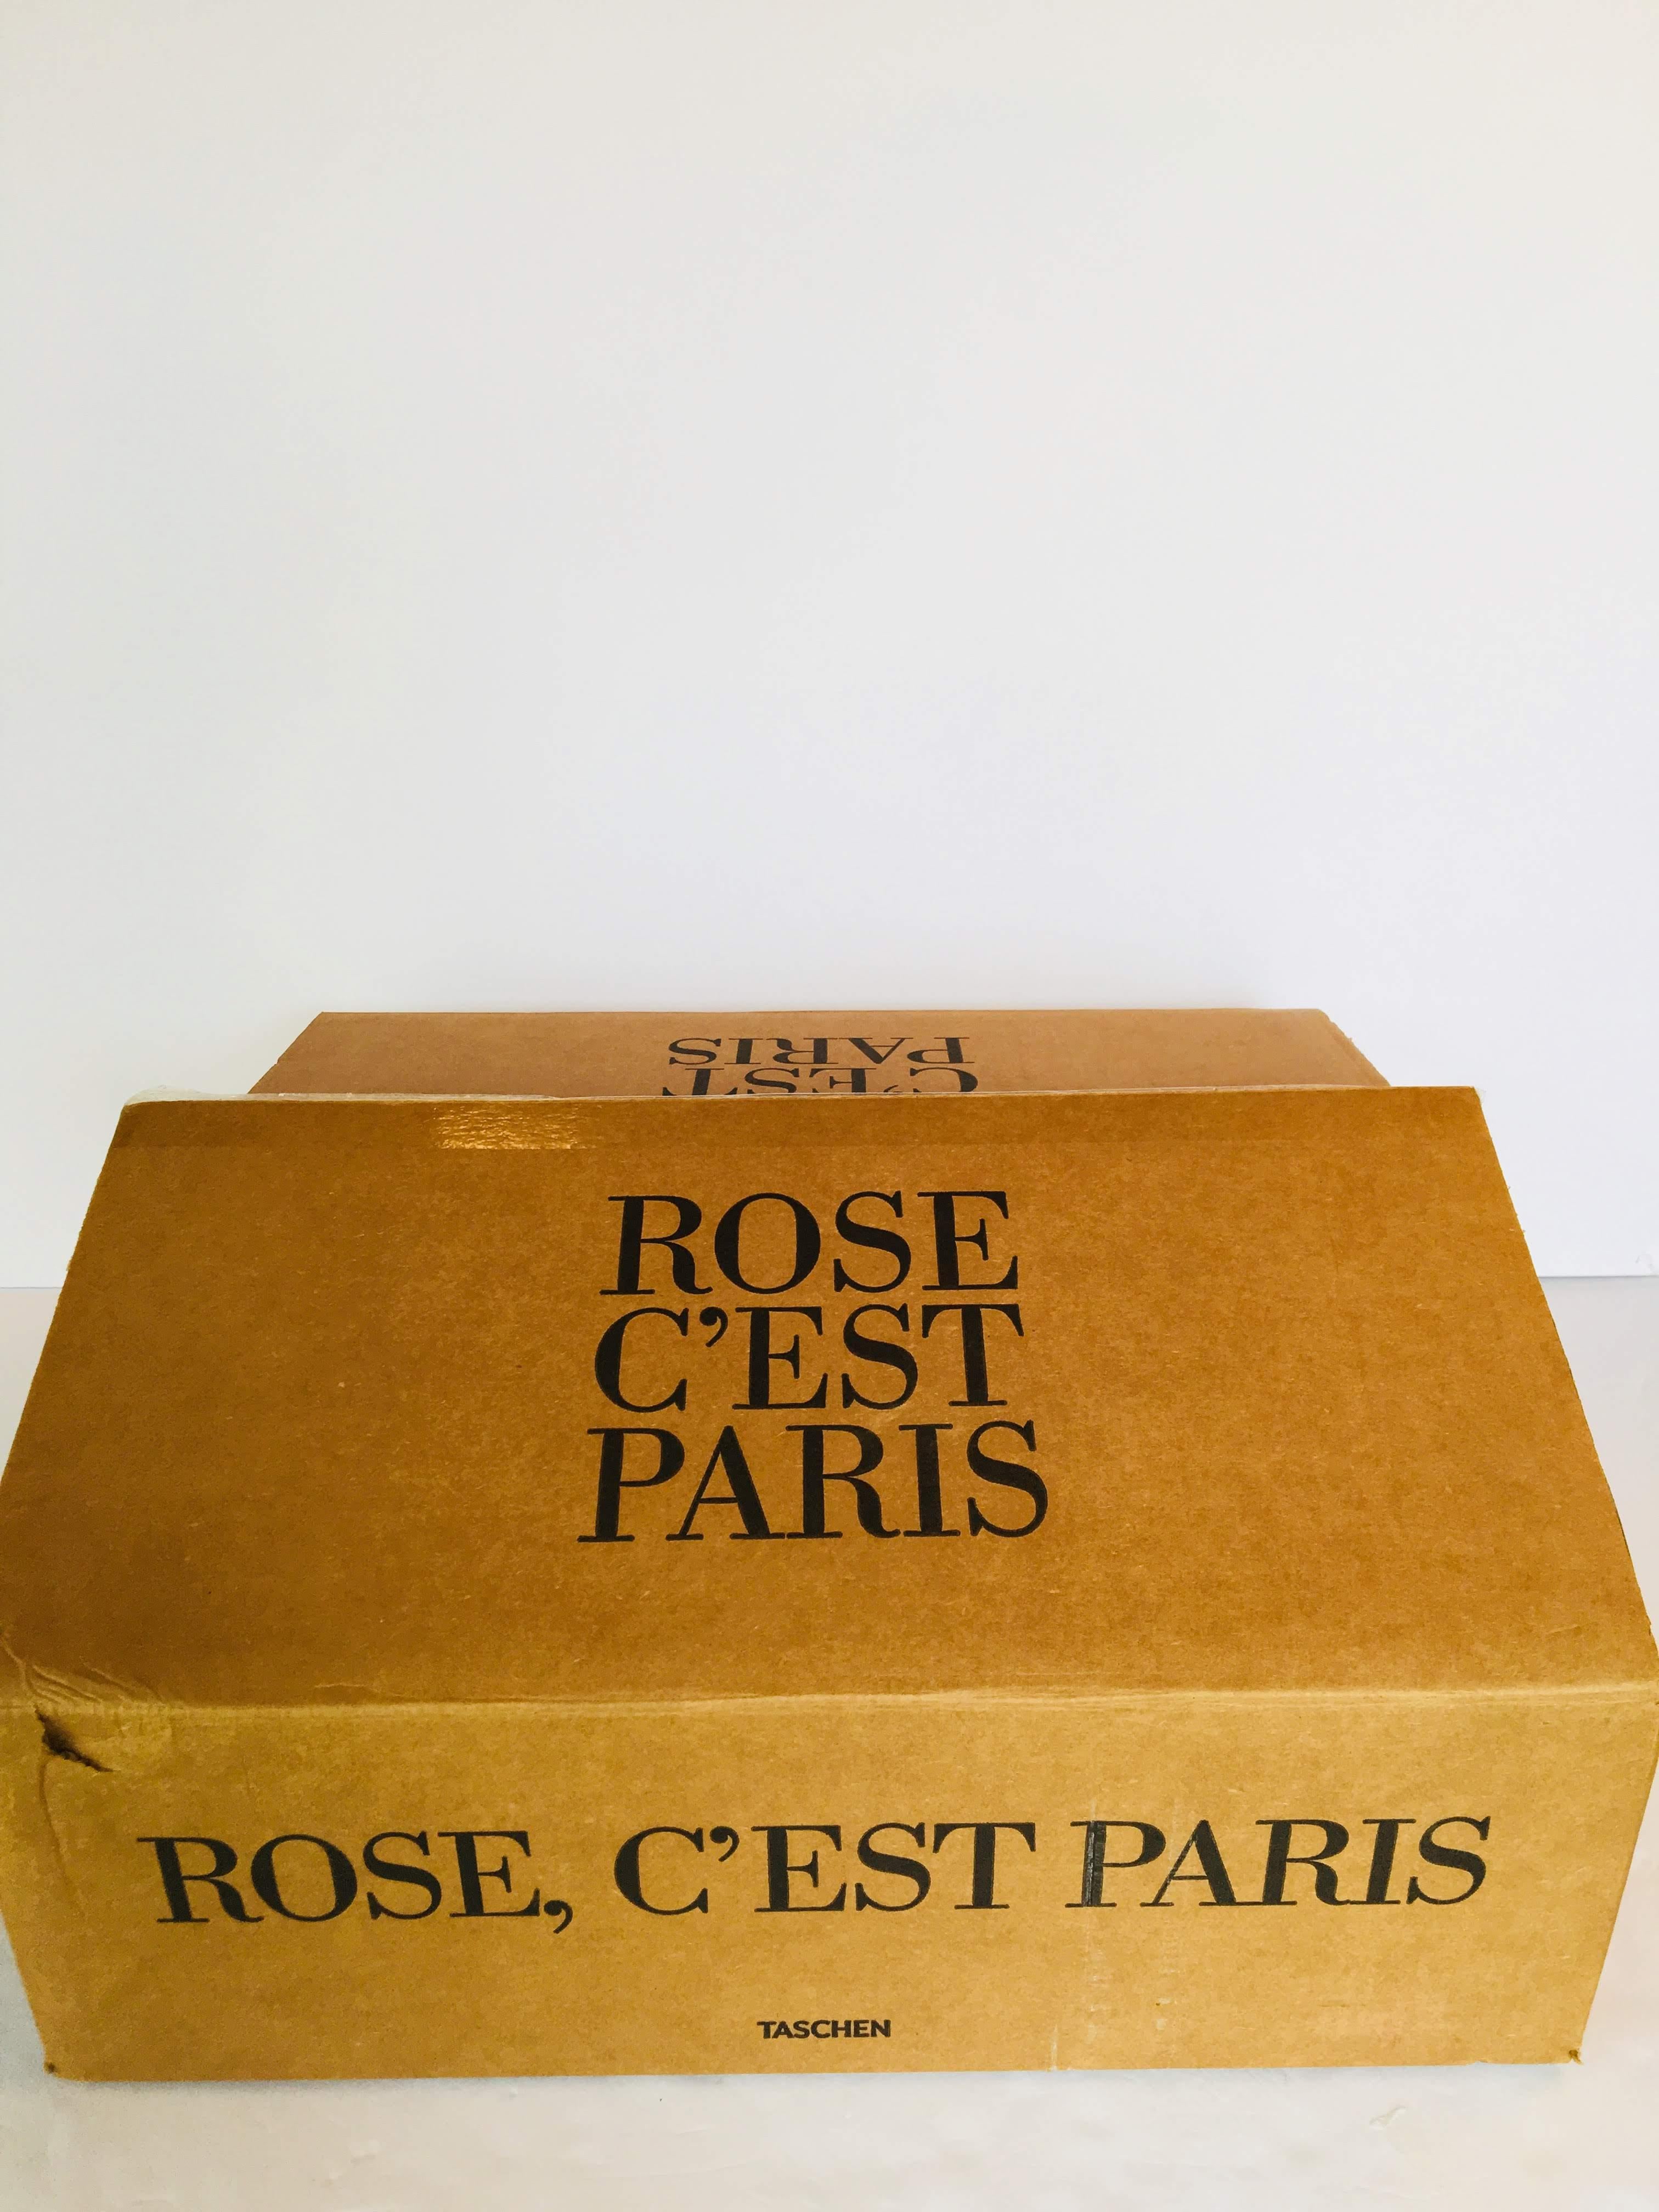 Rose, C'est Paris Limited Edition 2